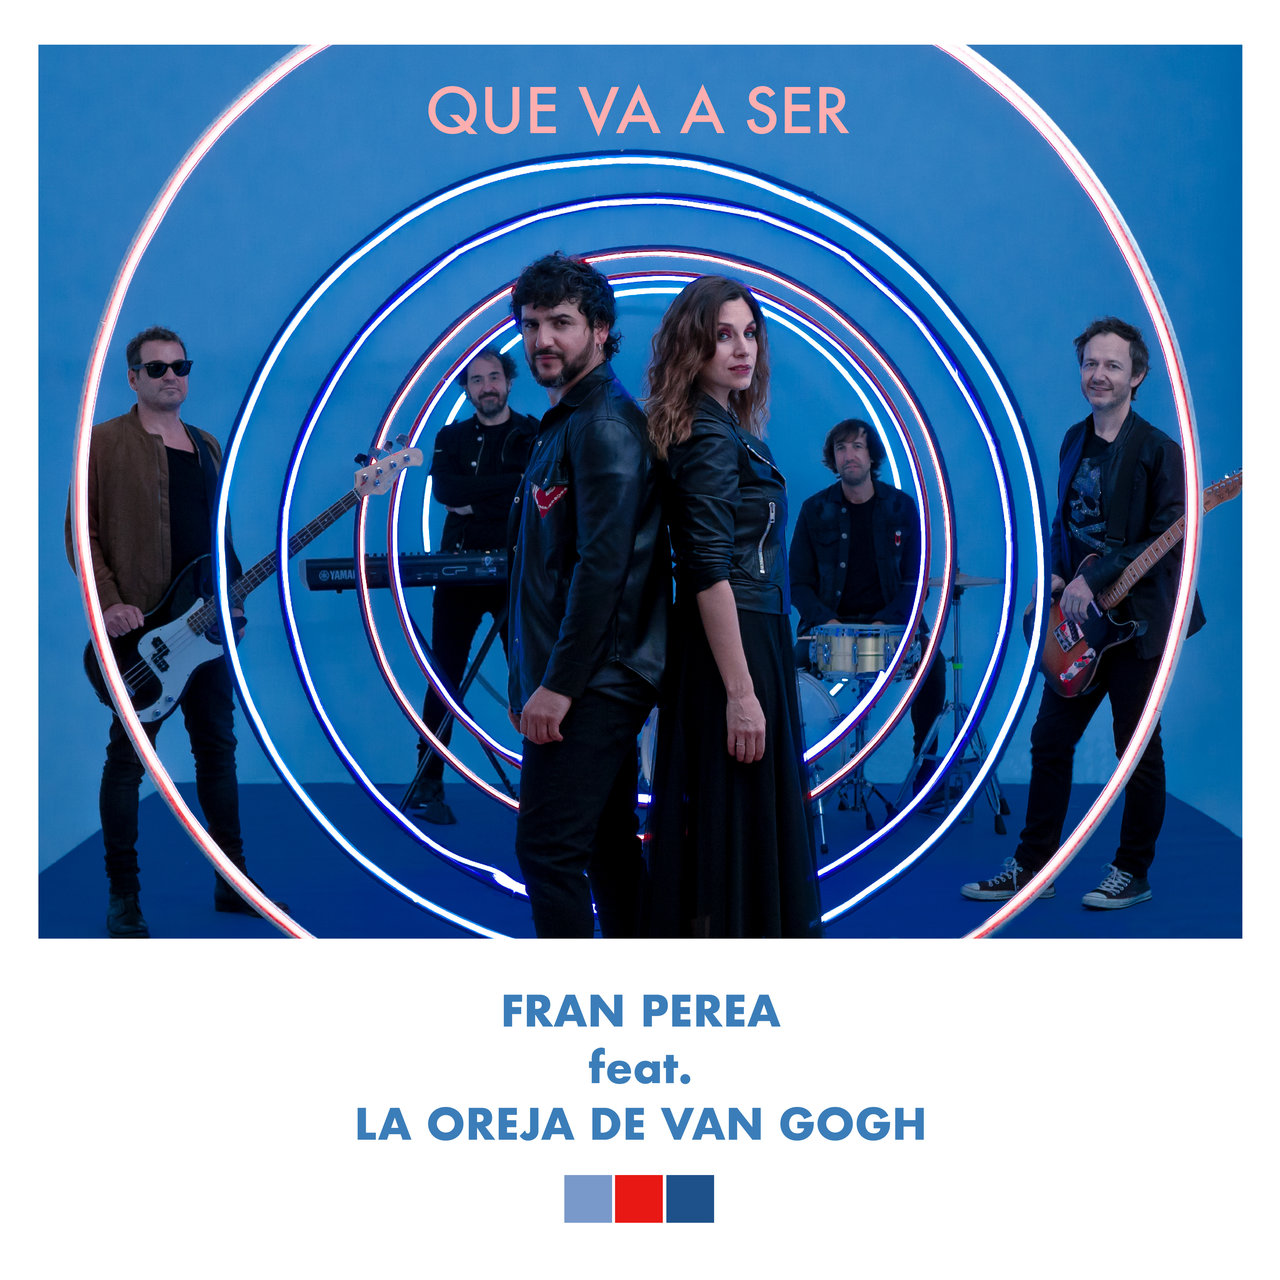 Fran Perea ft. featuring La Oreja de Van Gogh Que Va A Ser cover artwork